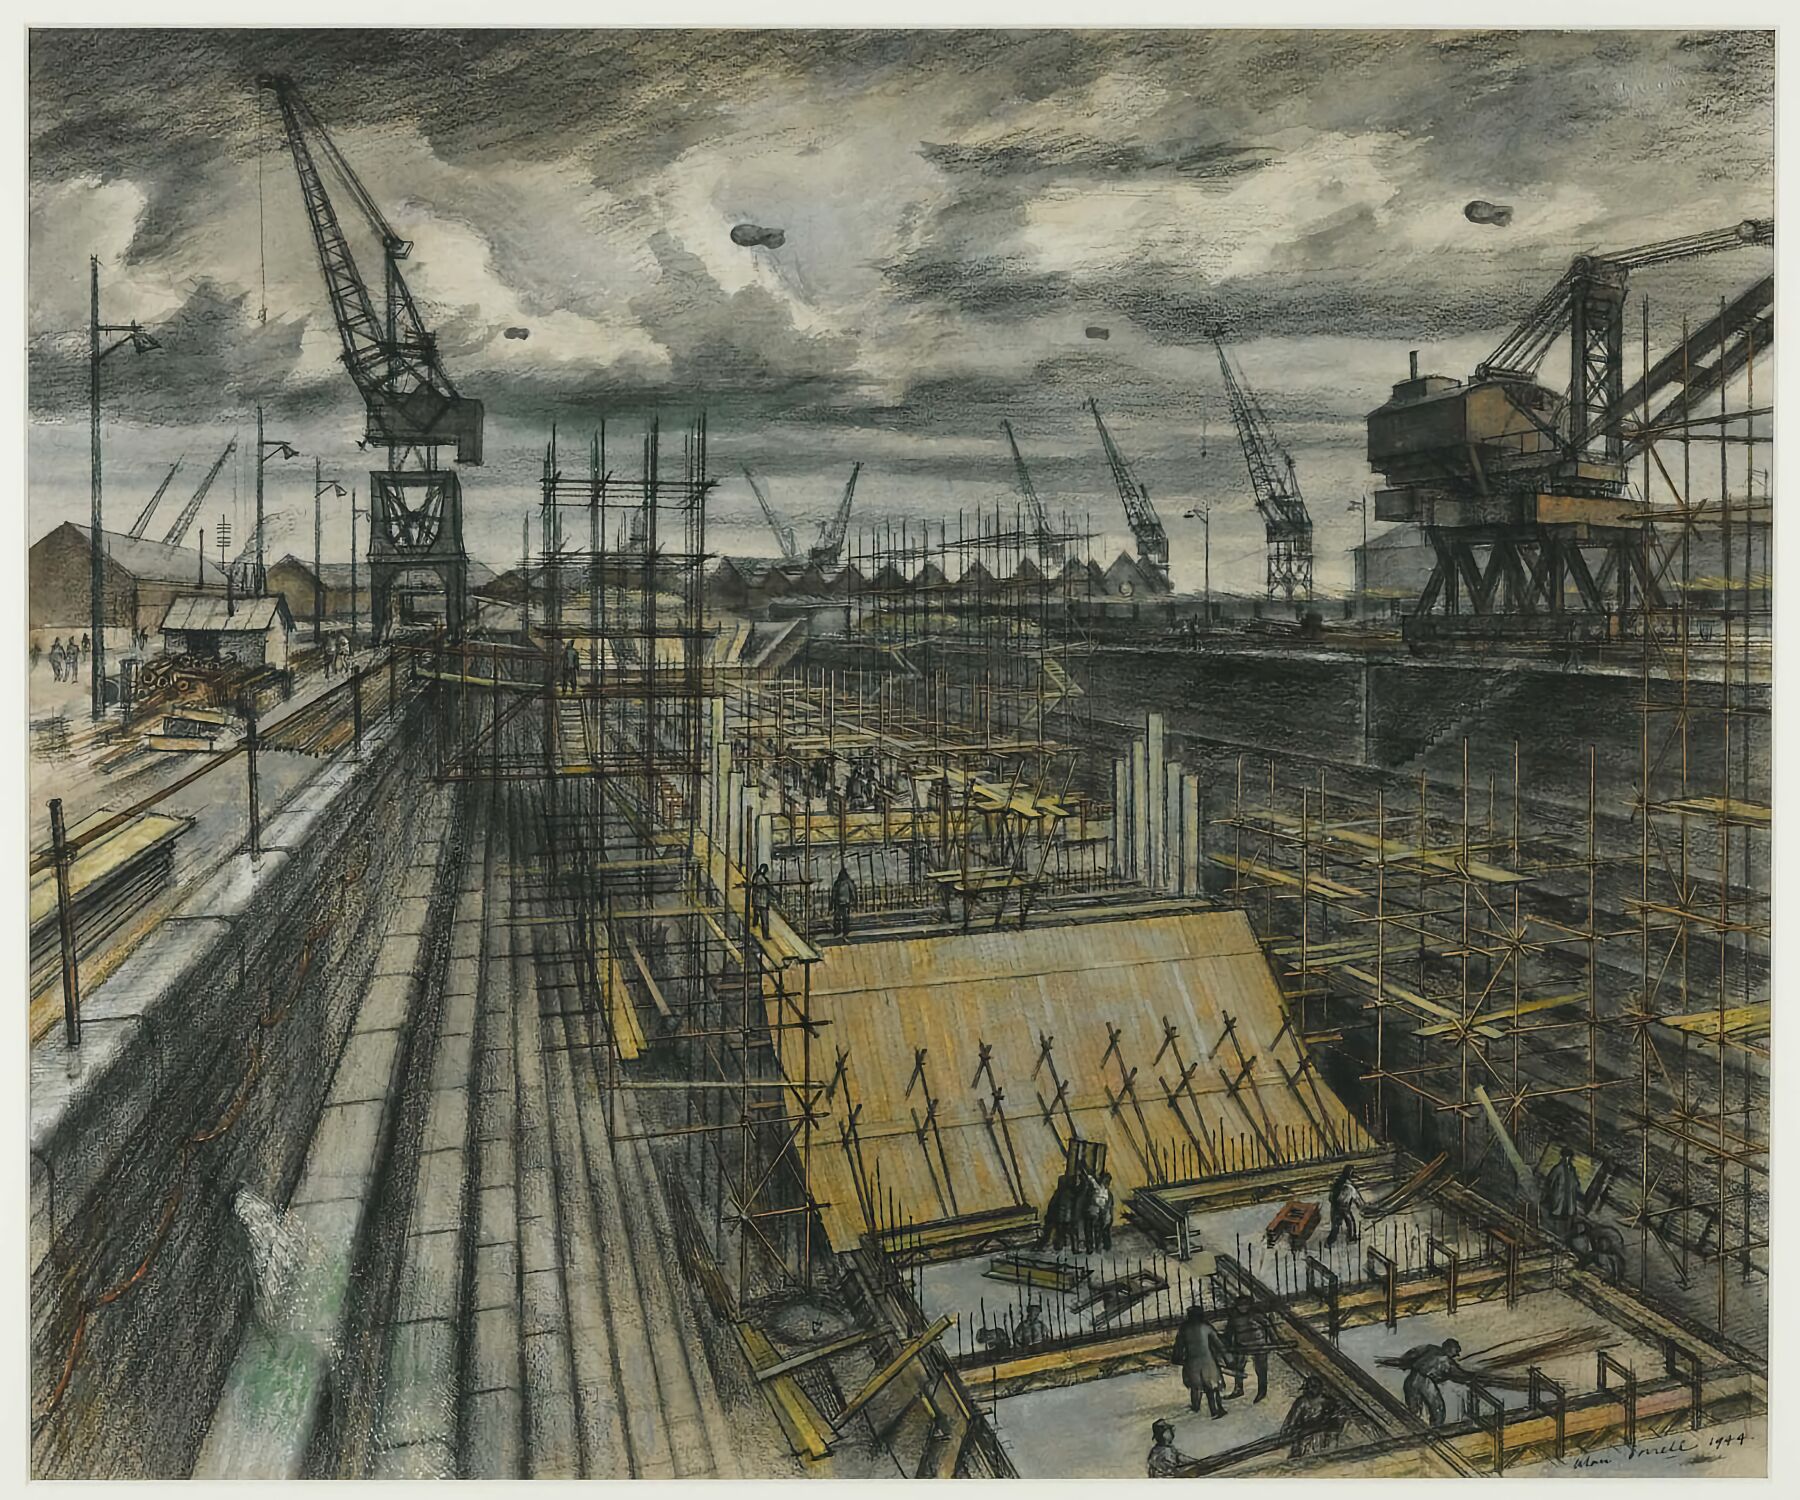 Southampton Dock by Alan Sorrell - 1944